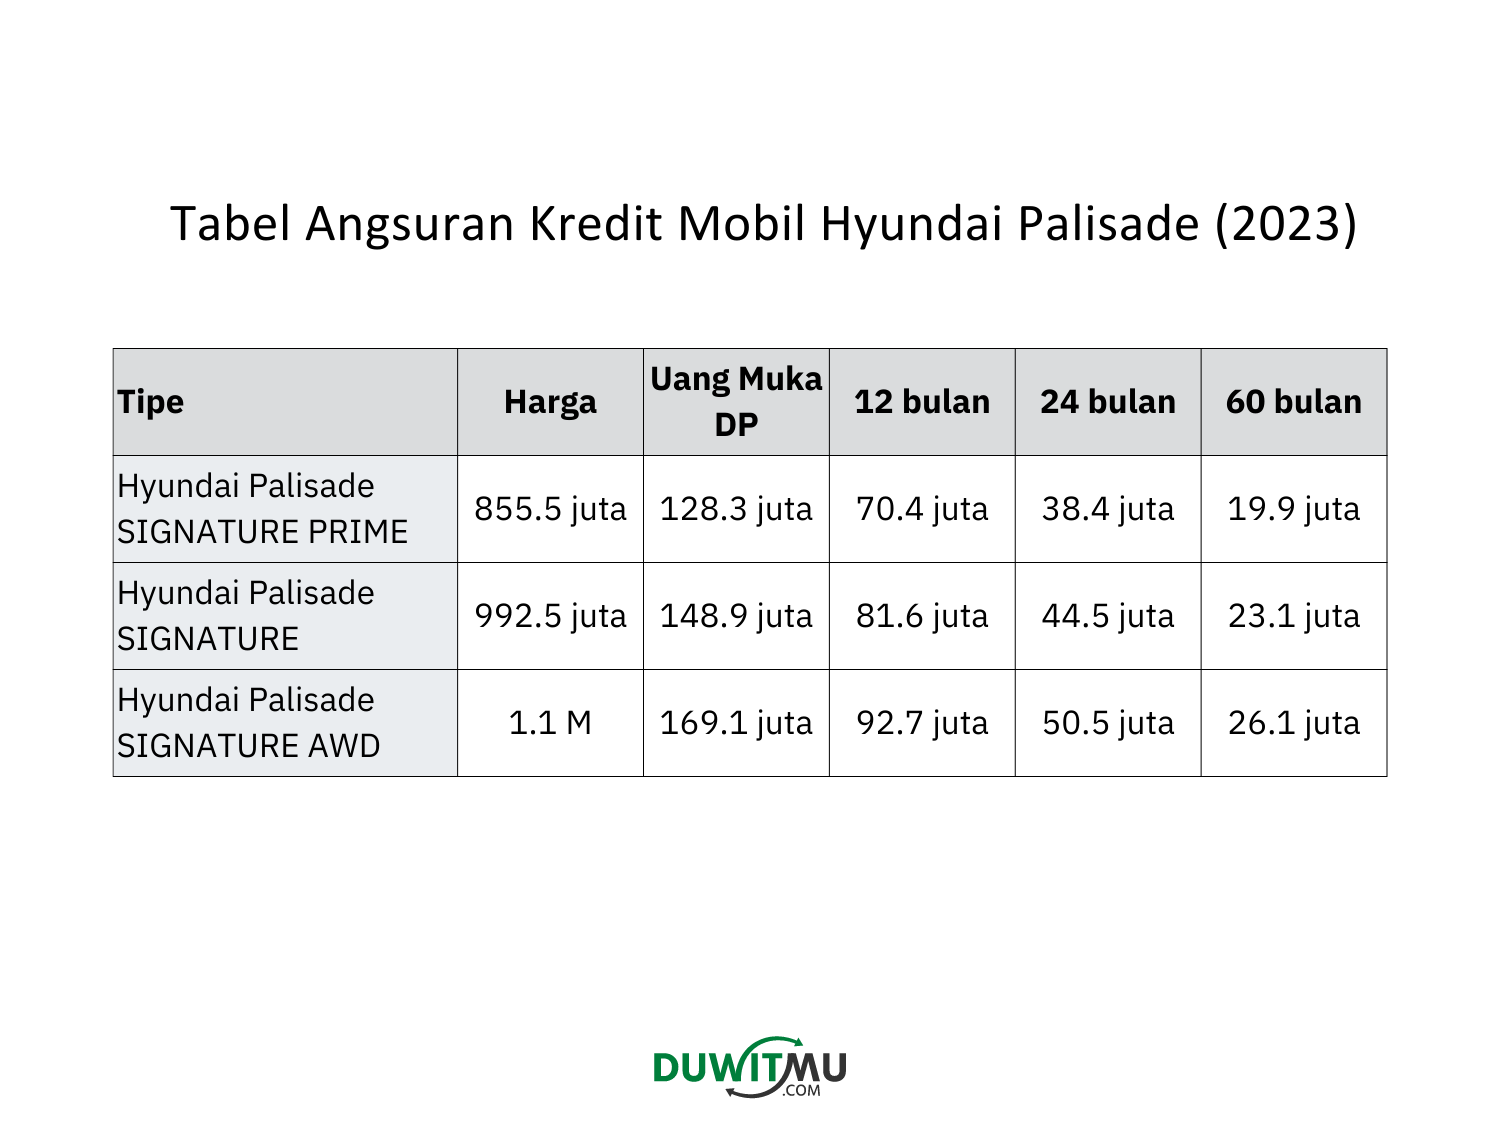 Tabel Angsuran Hyundai Palisade